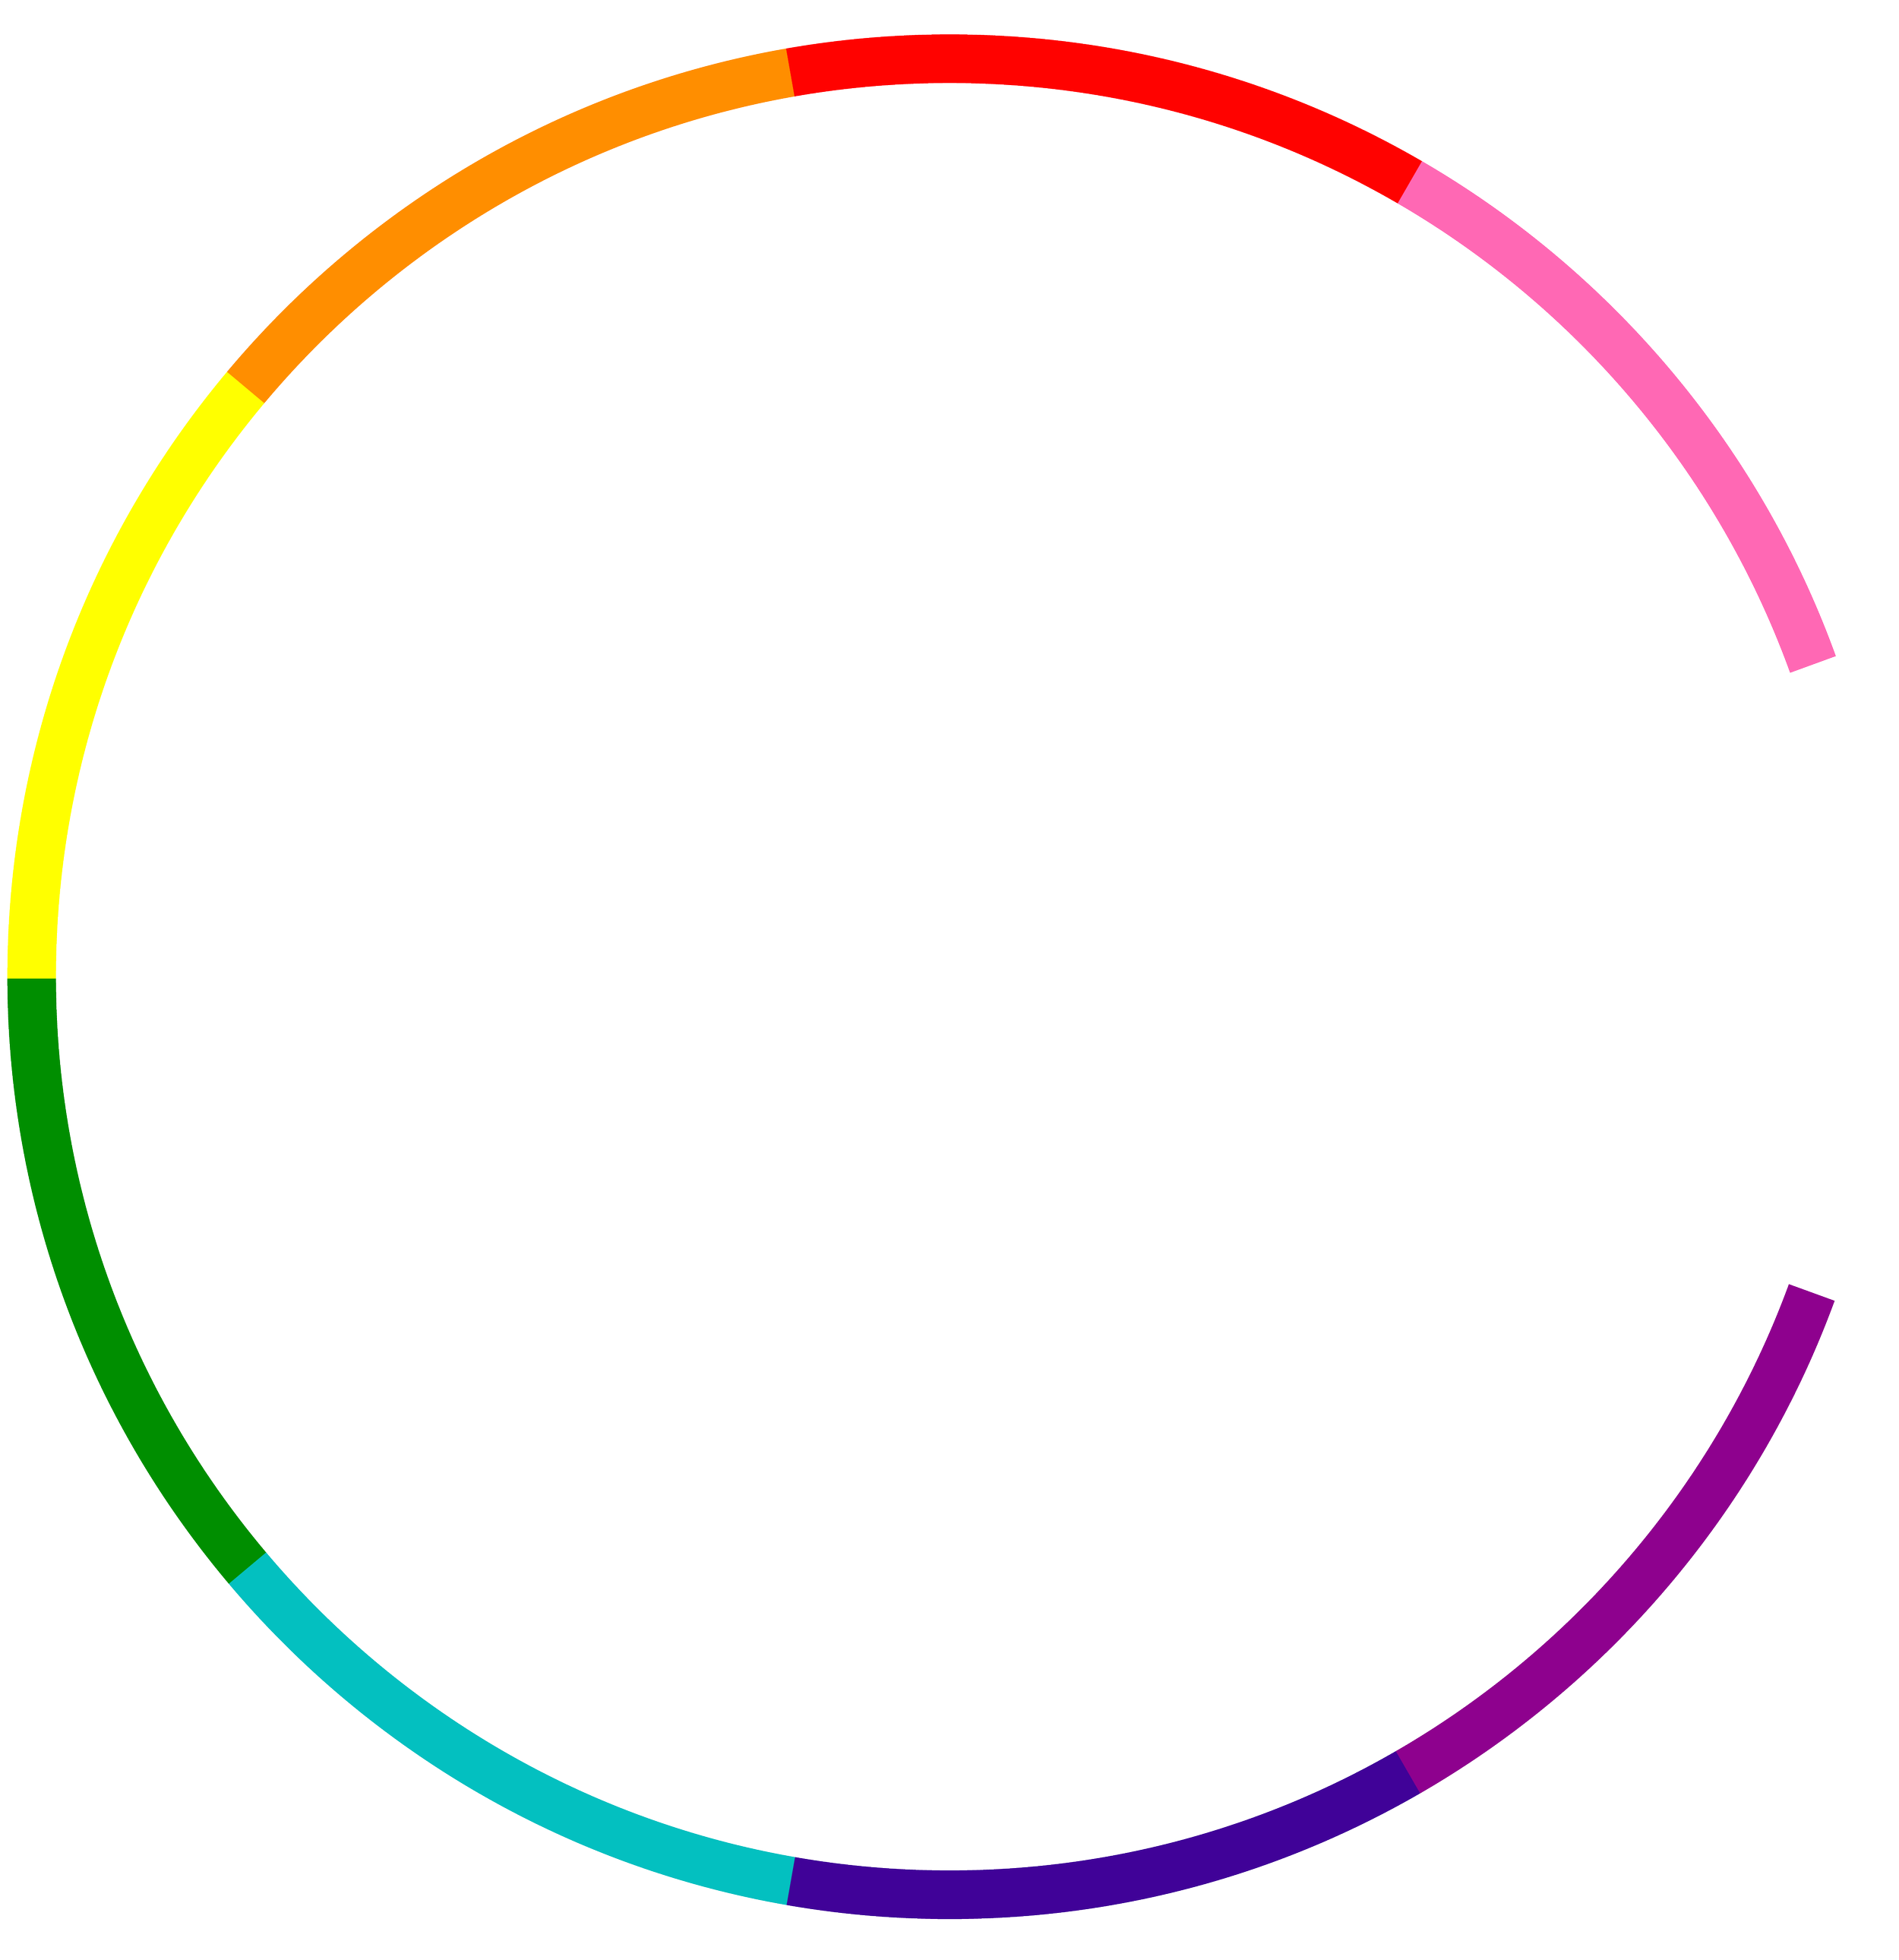 Kampagnen là một từ chỉ chiến dịch, tuy nhiên nó không liên quan đến gradient CSS. Chúng ta hãy xem những hình ảnh liên quan để tìm hiểu về các tính năng và công nghệ của gradient CSS.